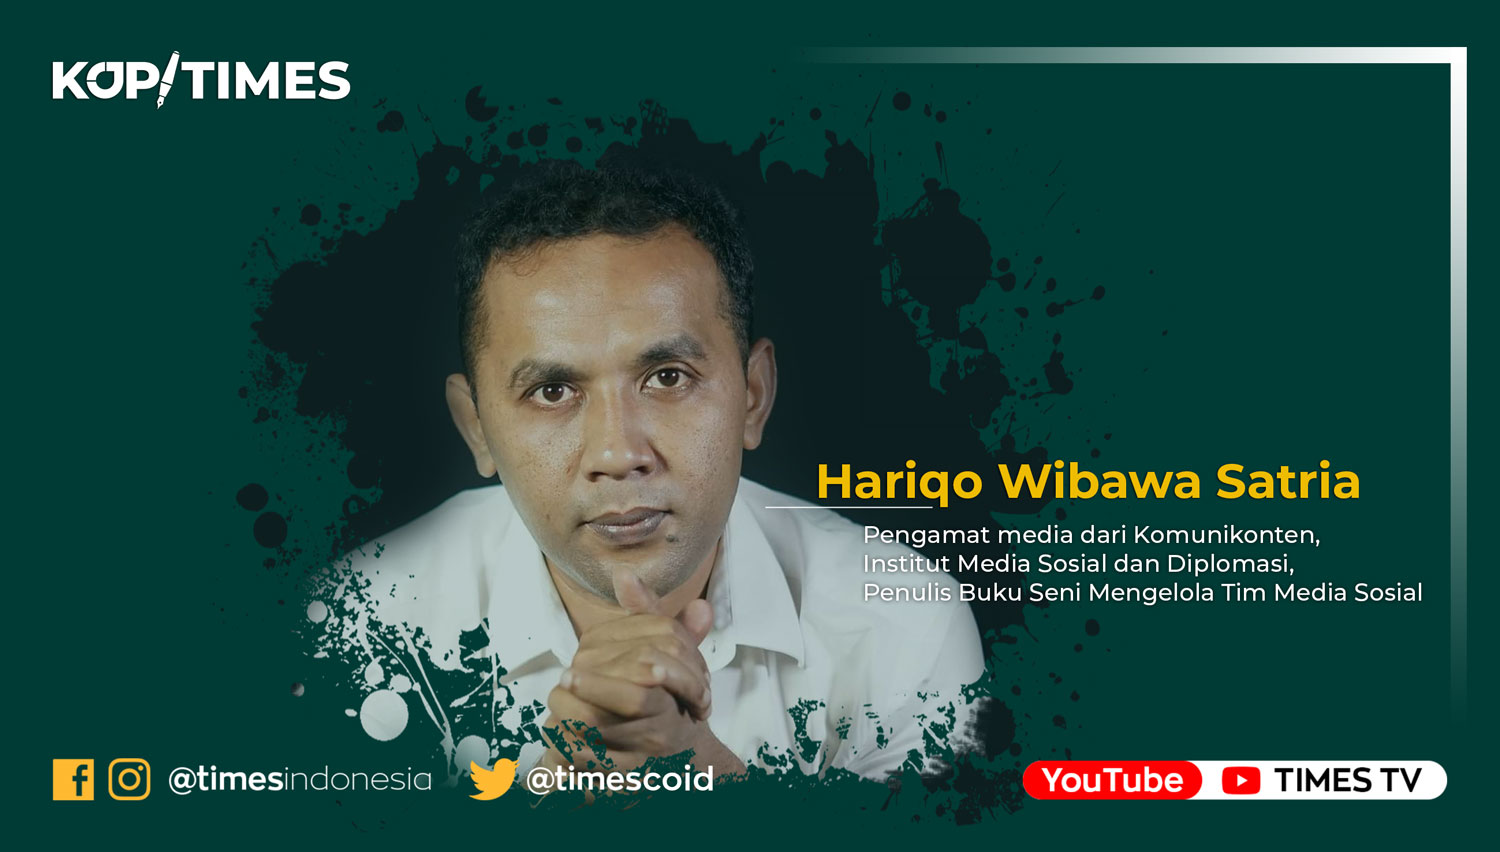 Hariqo Wibawa Satria, pengamat media dari Komunikonten, Institut Media Sosial dan Diplomasi, Penulis Buku Seni Mengelola Tim Media Sosial. (Grafis: TIMES Indonesia)